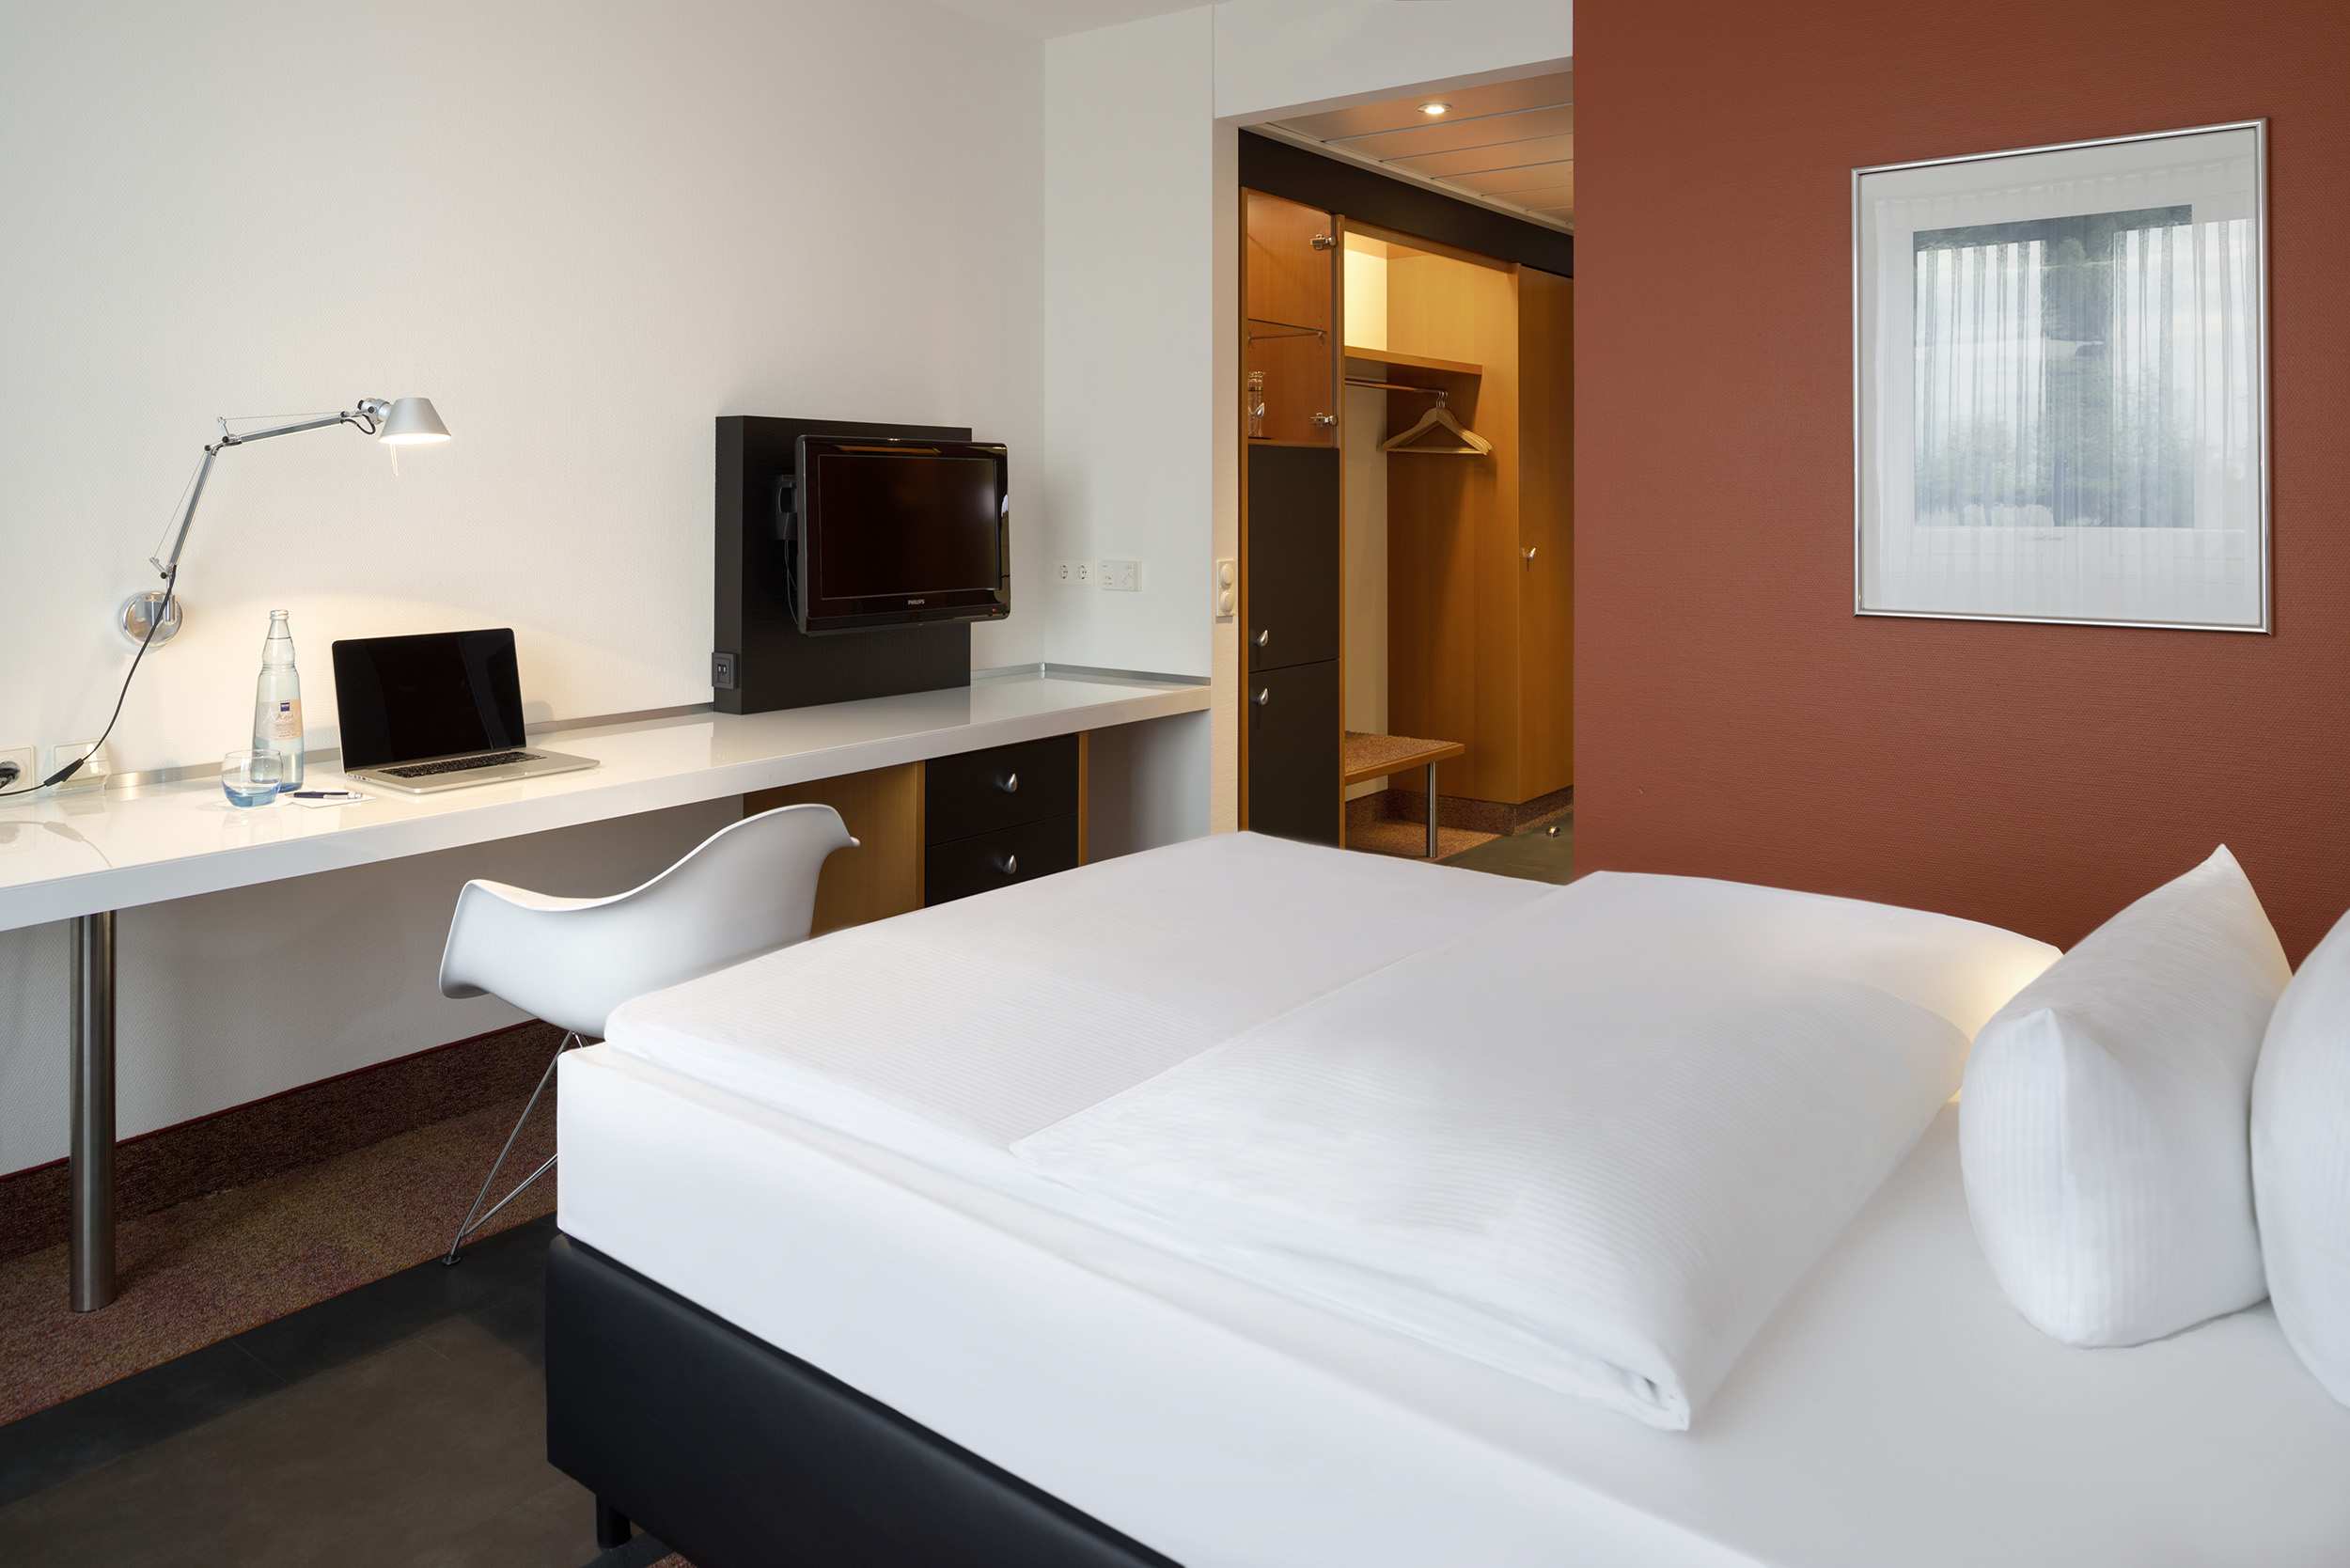 Standard Einzelzimmer im Hotel in Neuss mit roter Wand und Schreibtisch 